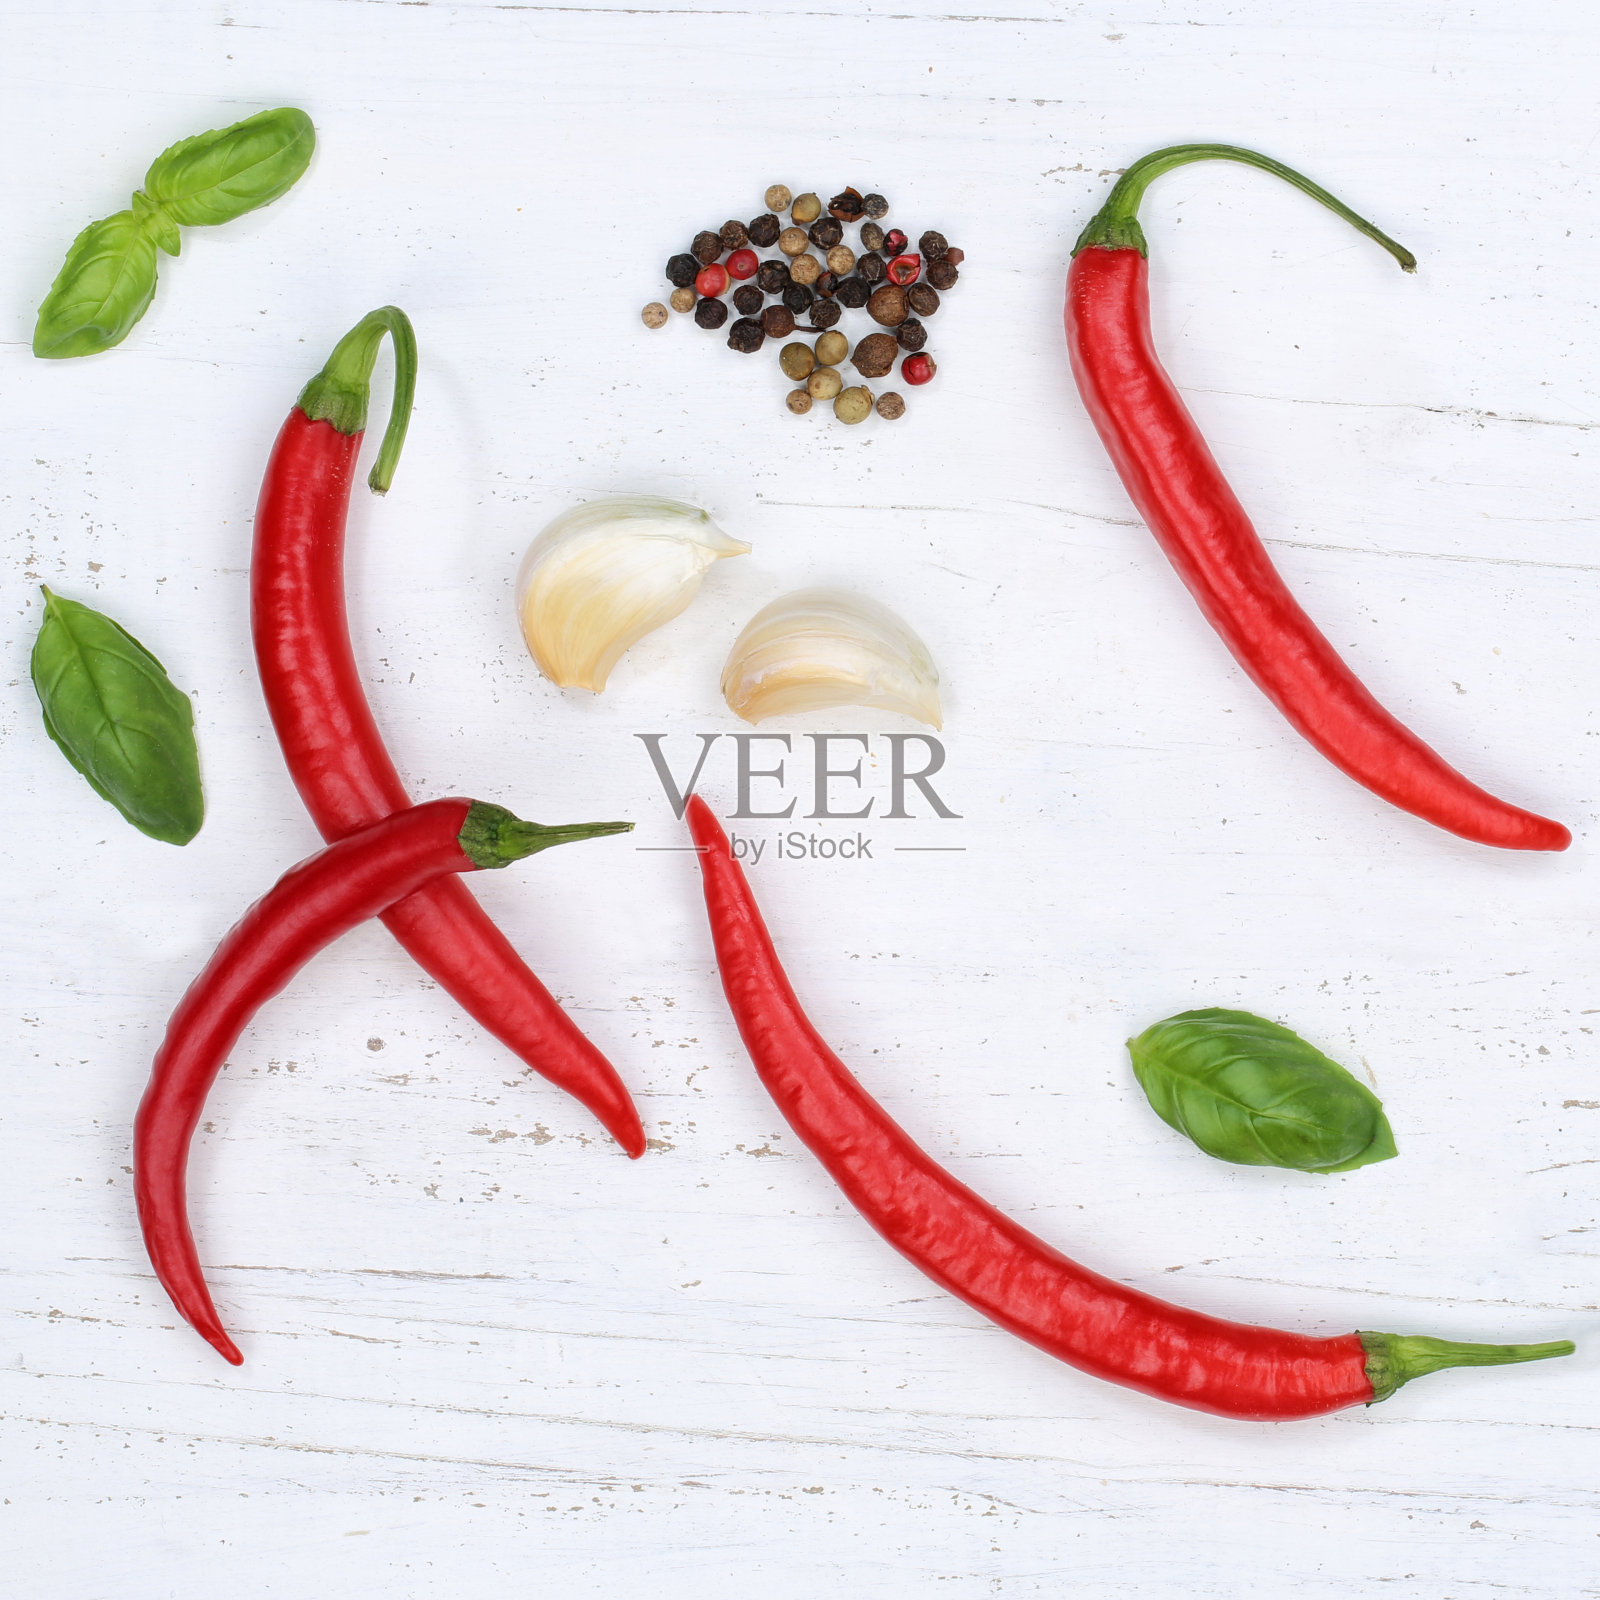 红辣椒、红辣椒、红辣椒等烹饪配料的背景照片摄影图片